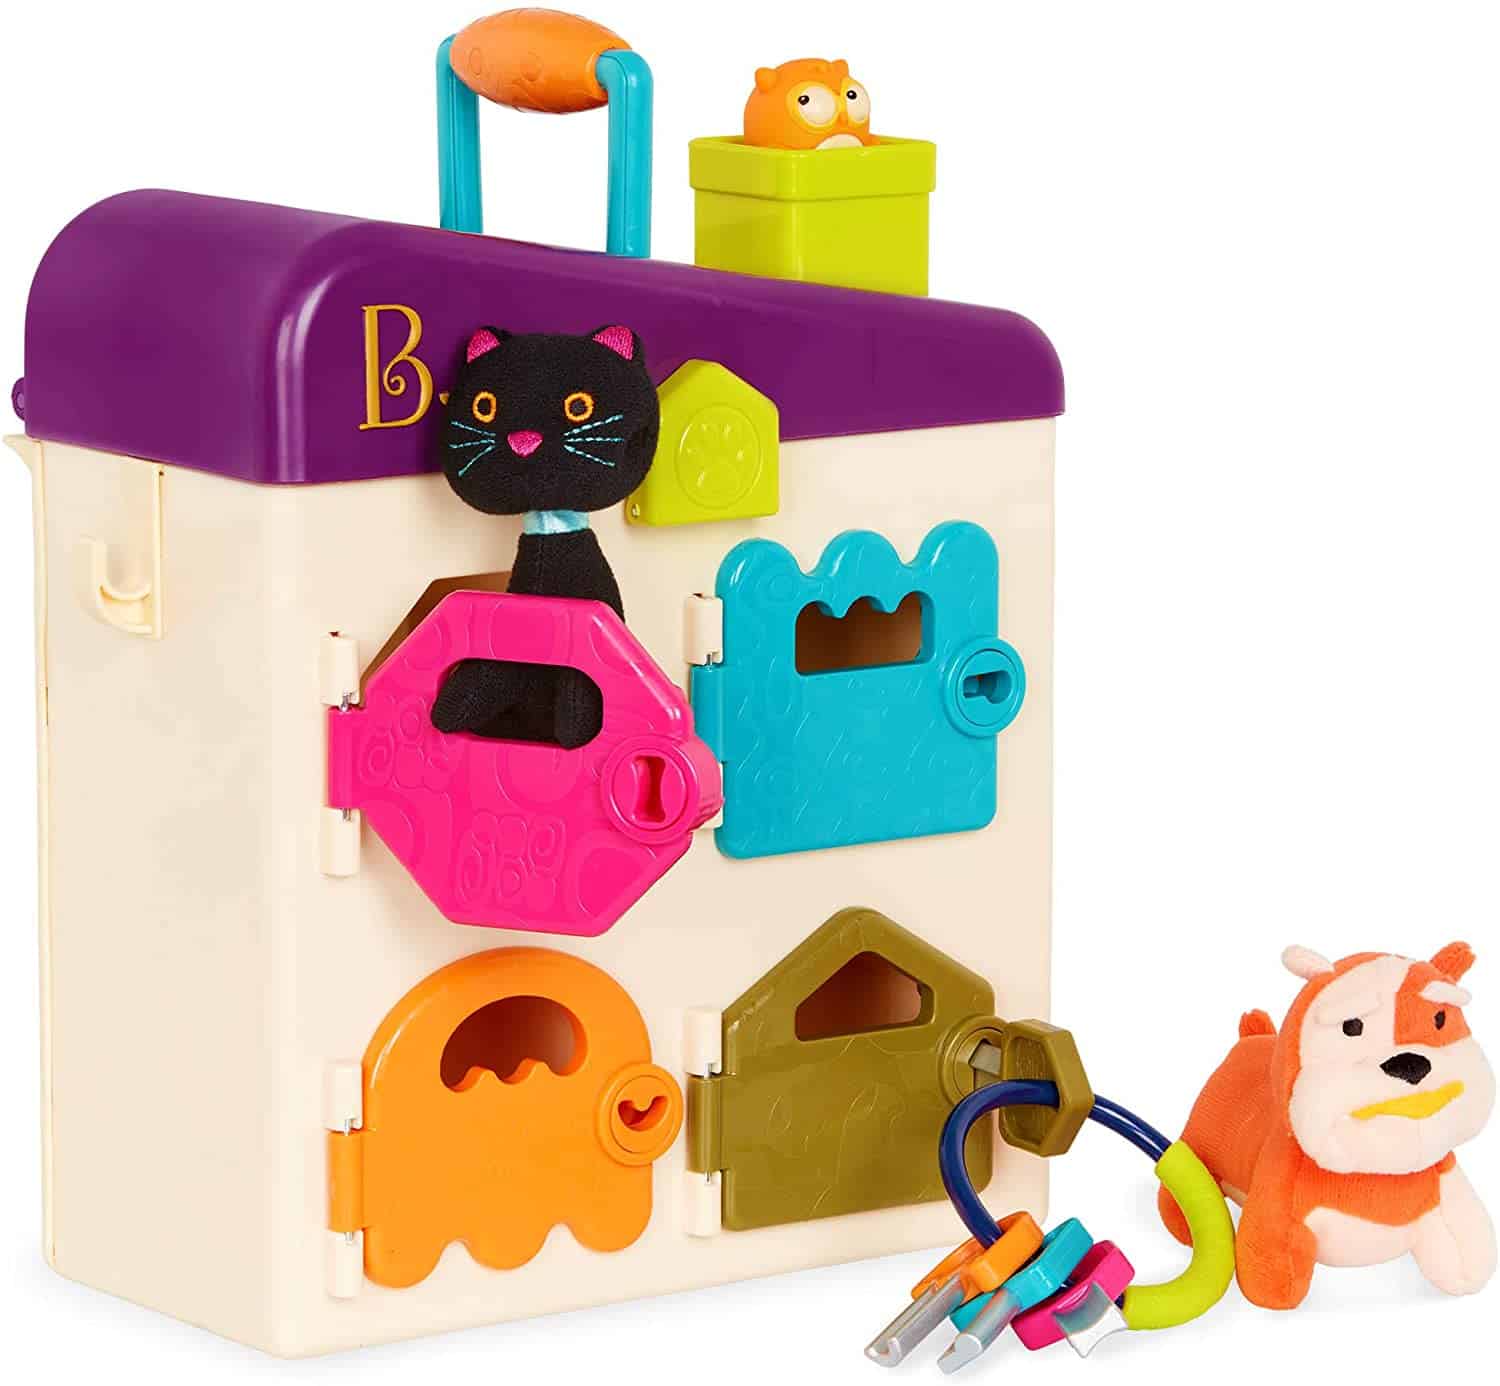 Maleta y candados con temática de animales: maleta veterinaria B. toys